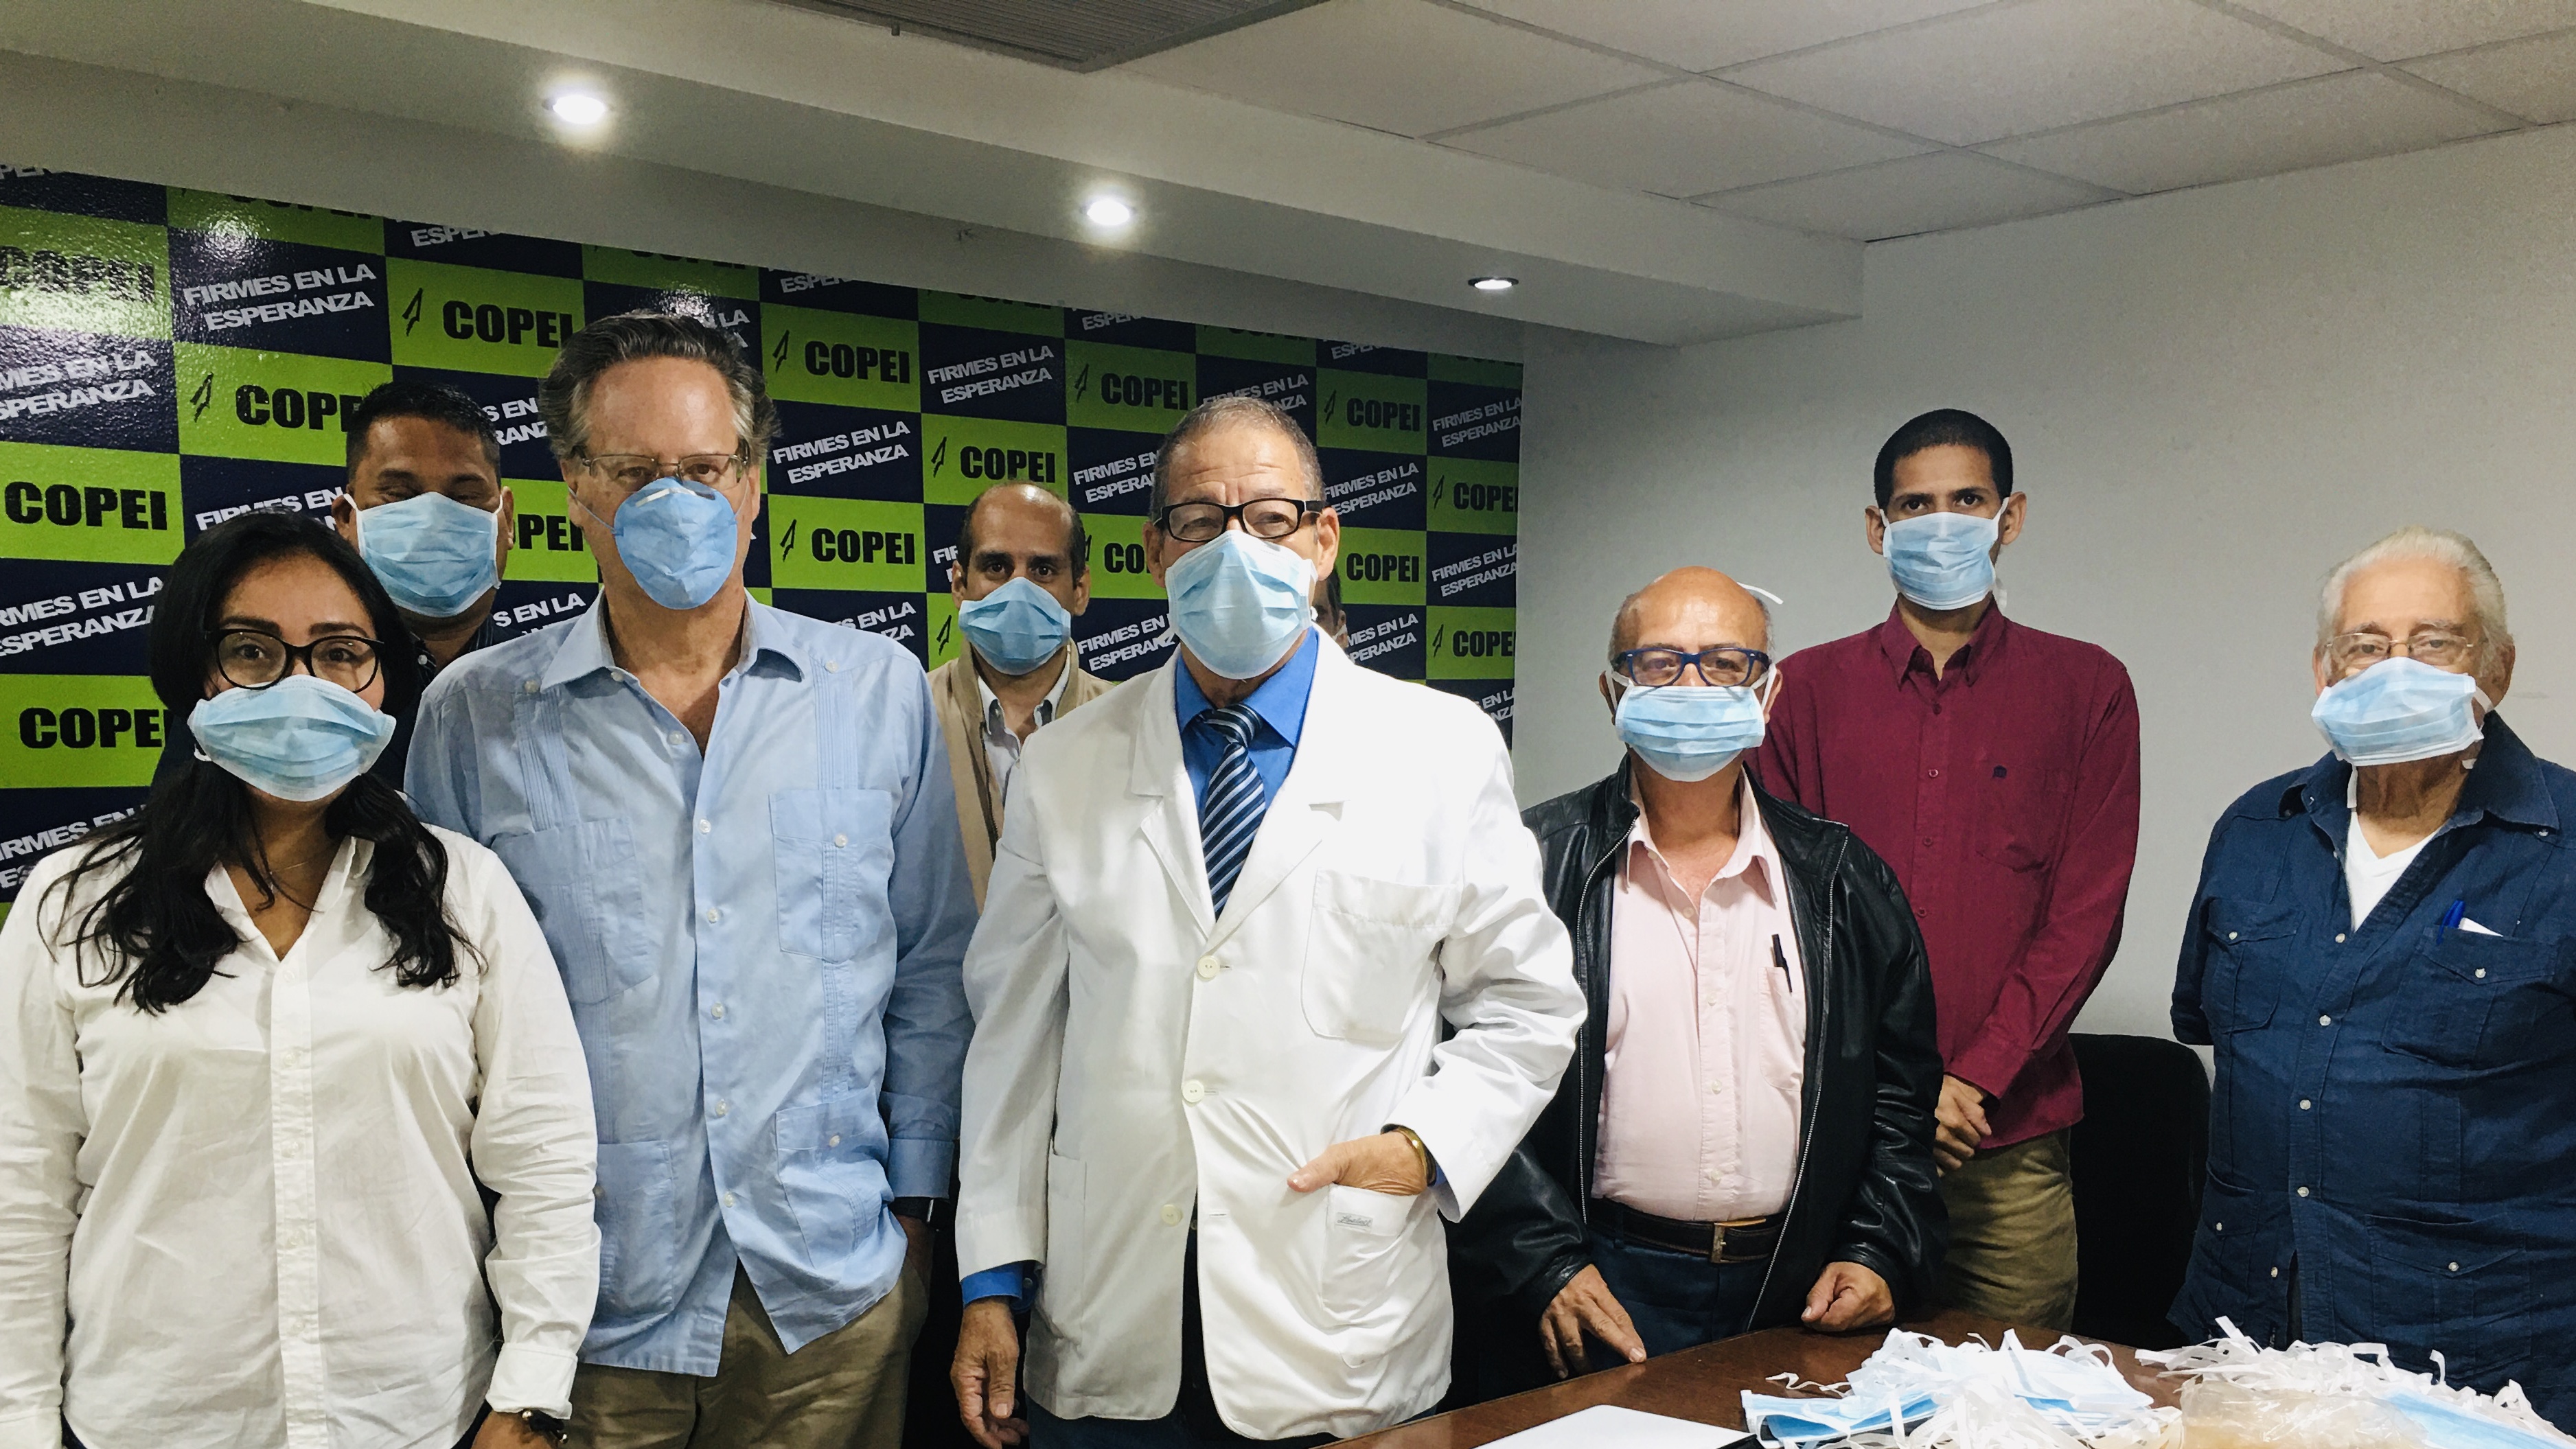 Dr. Müller: Hospitales venezolanos no tienen condiciones para enfrentar al coronavirus